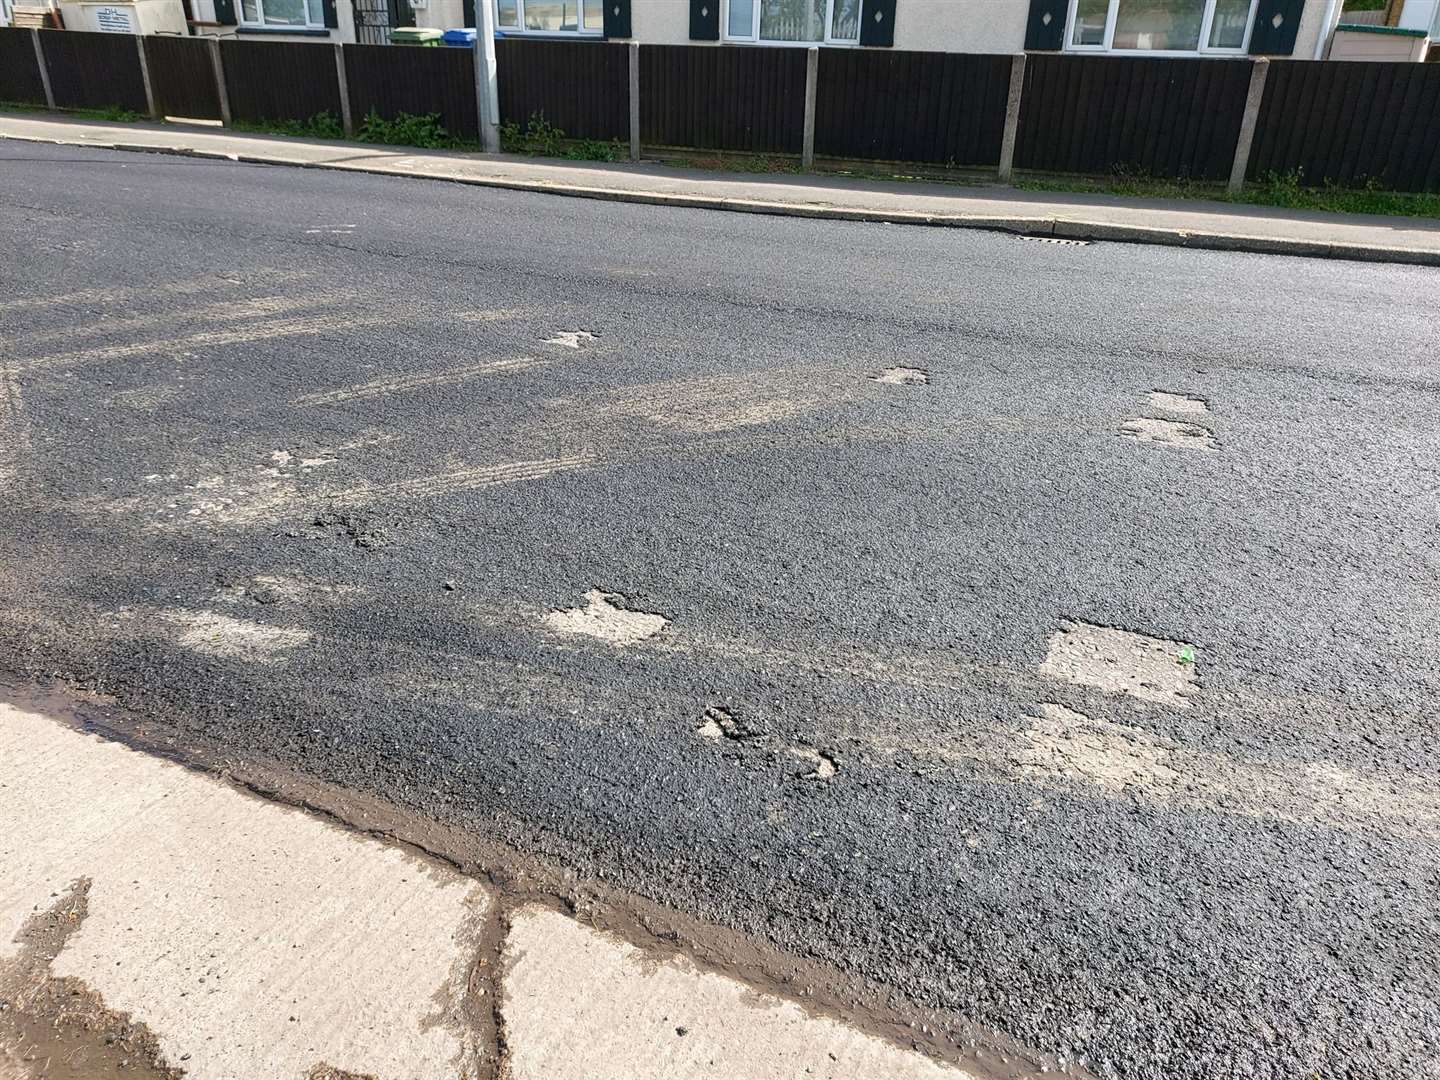 The poor road resurfacing in Leysdown